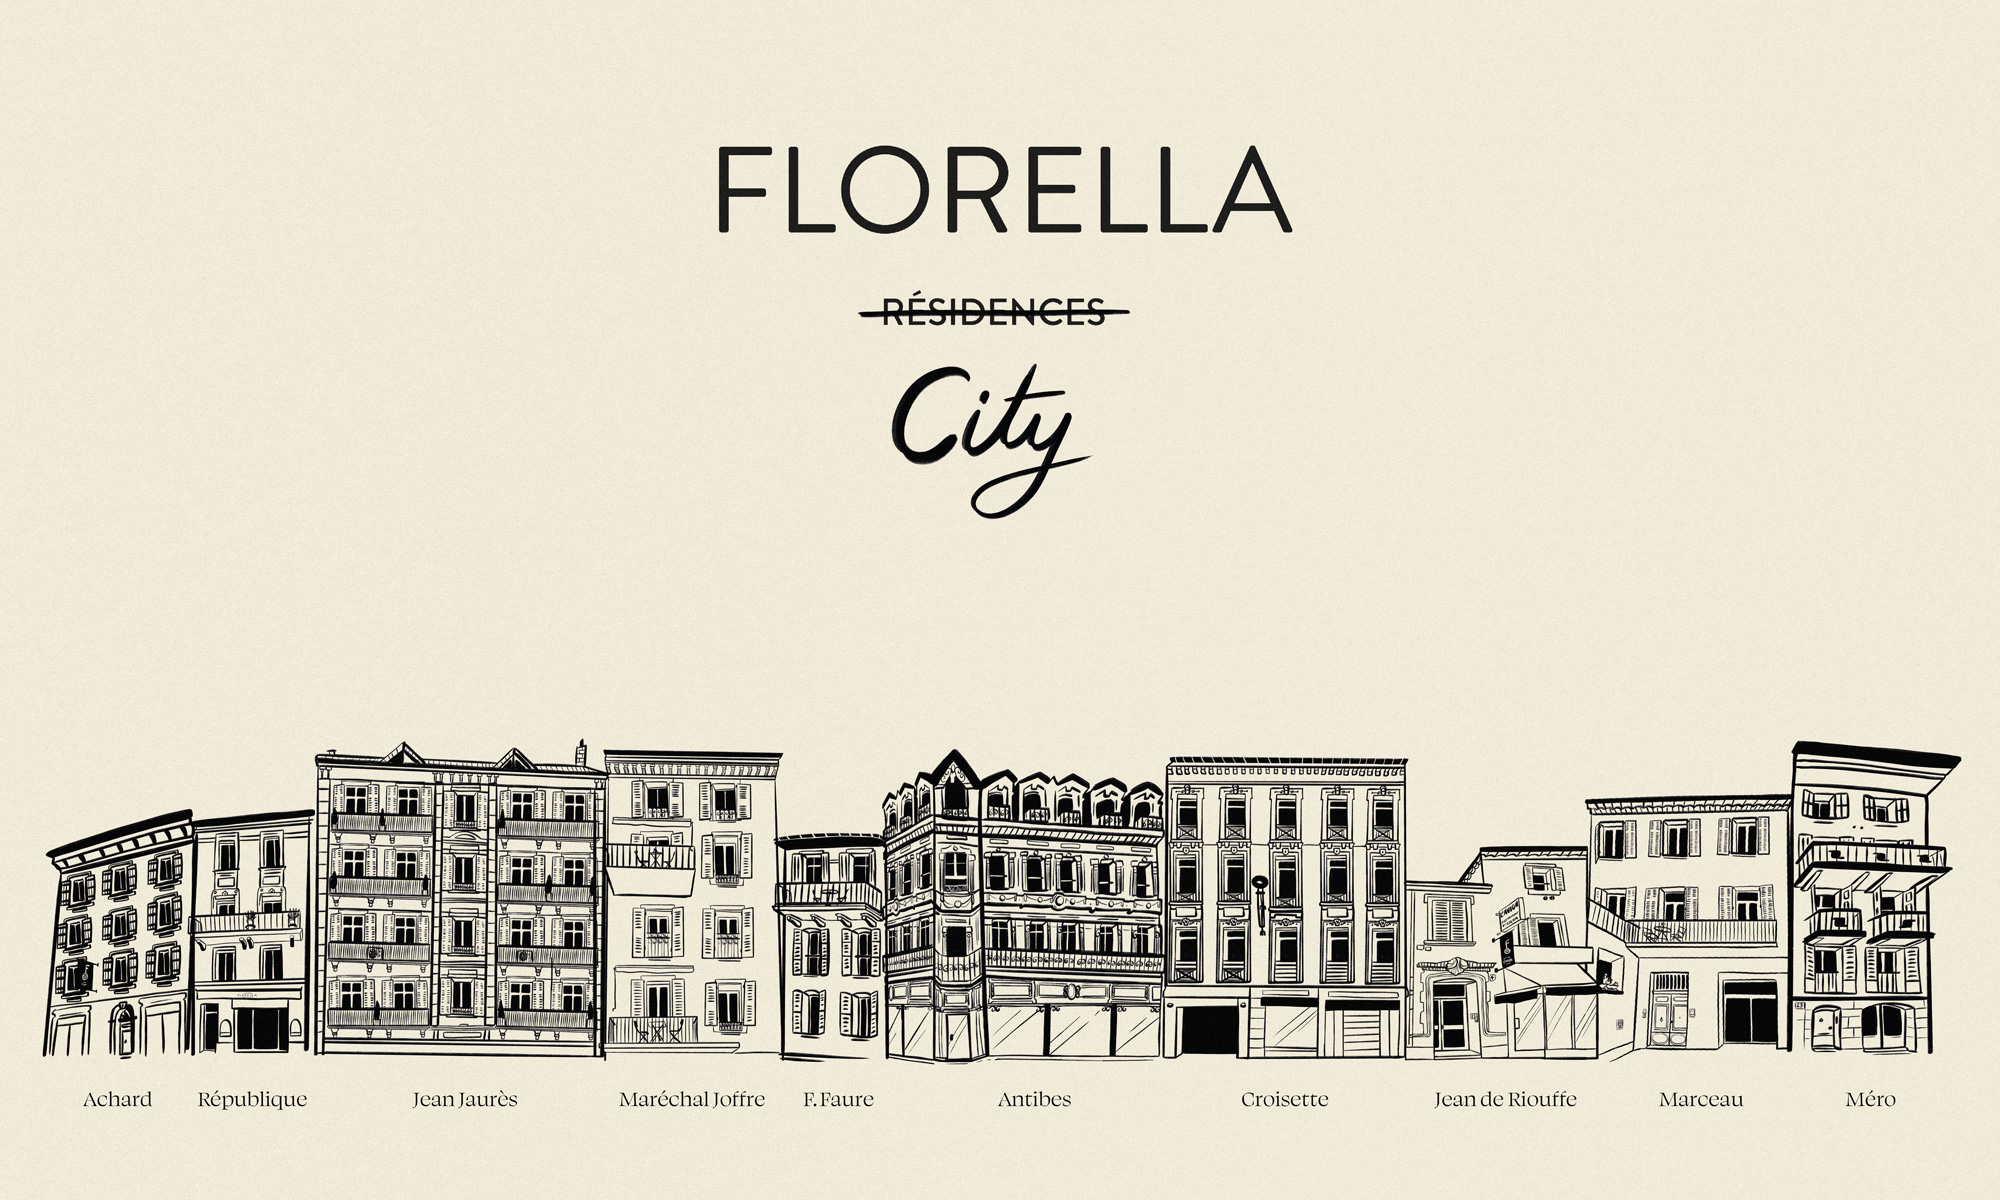 Desin des bâtiments pour Florella.
Réalisé par Au-delà studio.